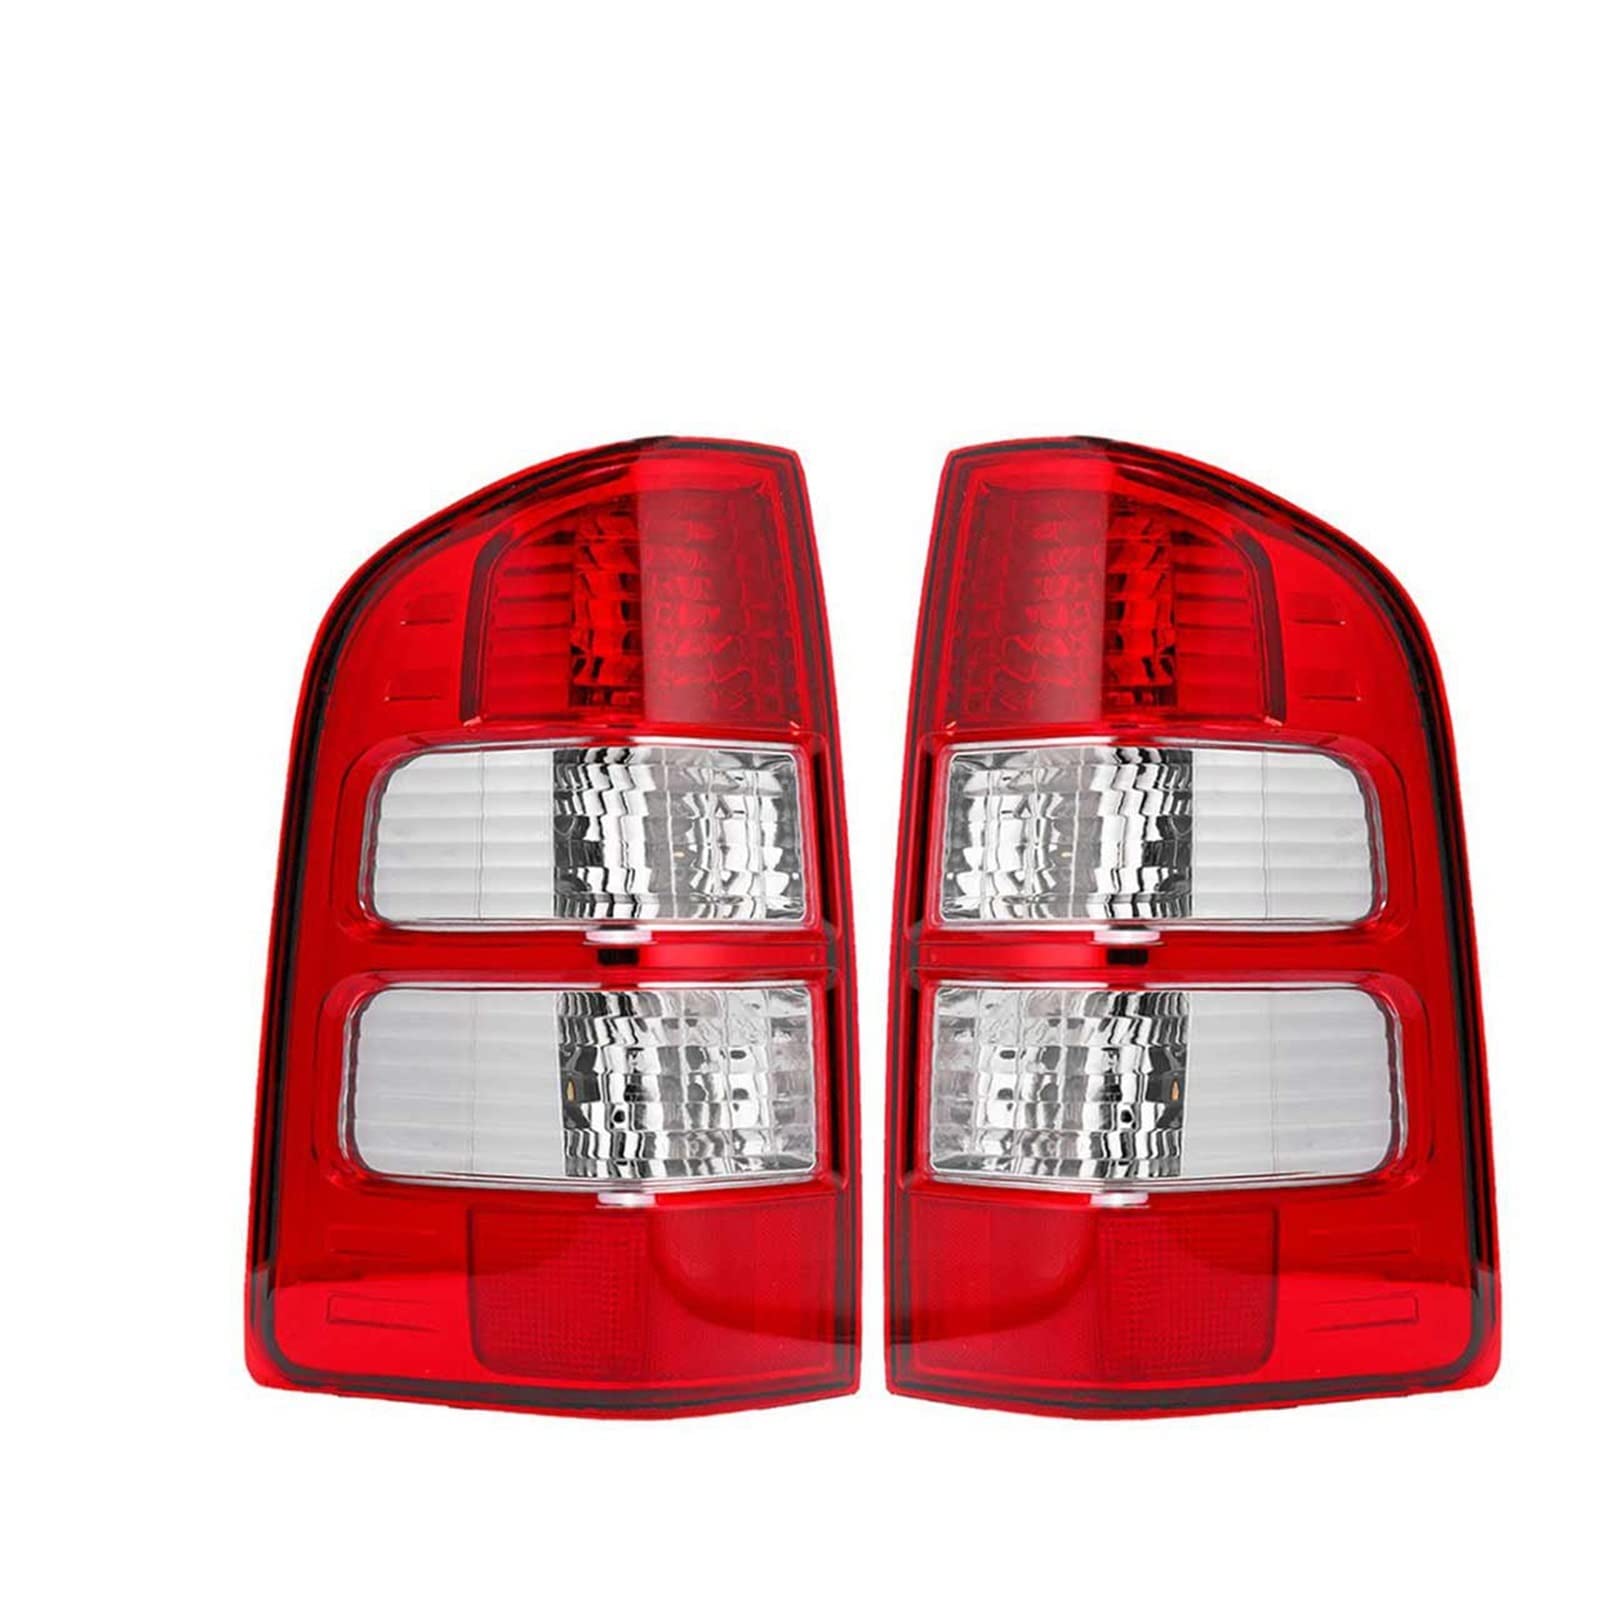 BIURKA auto rücklicht Auto Links/Rechts Hinten Rücklicht Bremsleuchte Mit Glühlampen Für Fo-rd Rang-ger Th-unter-der 2006 2007 2008 2009-2011 (Farbe : Pair) von BIURKA